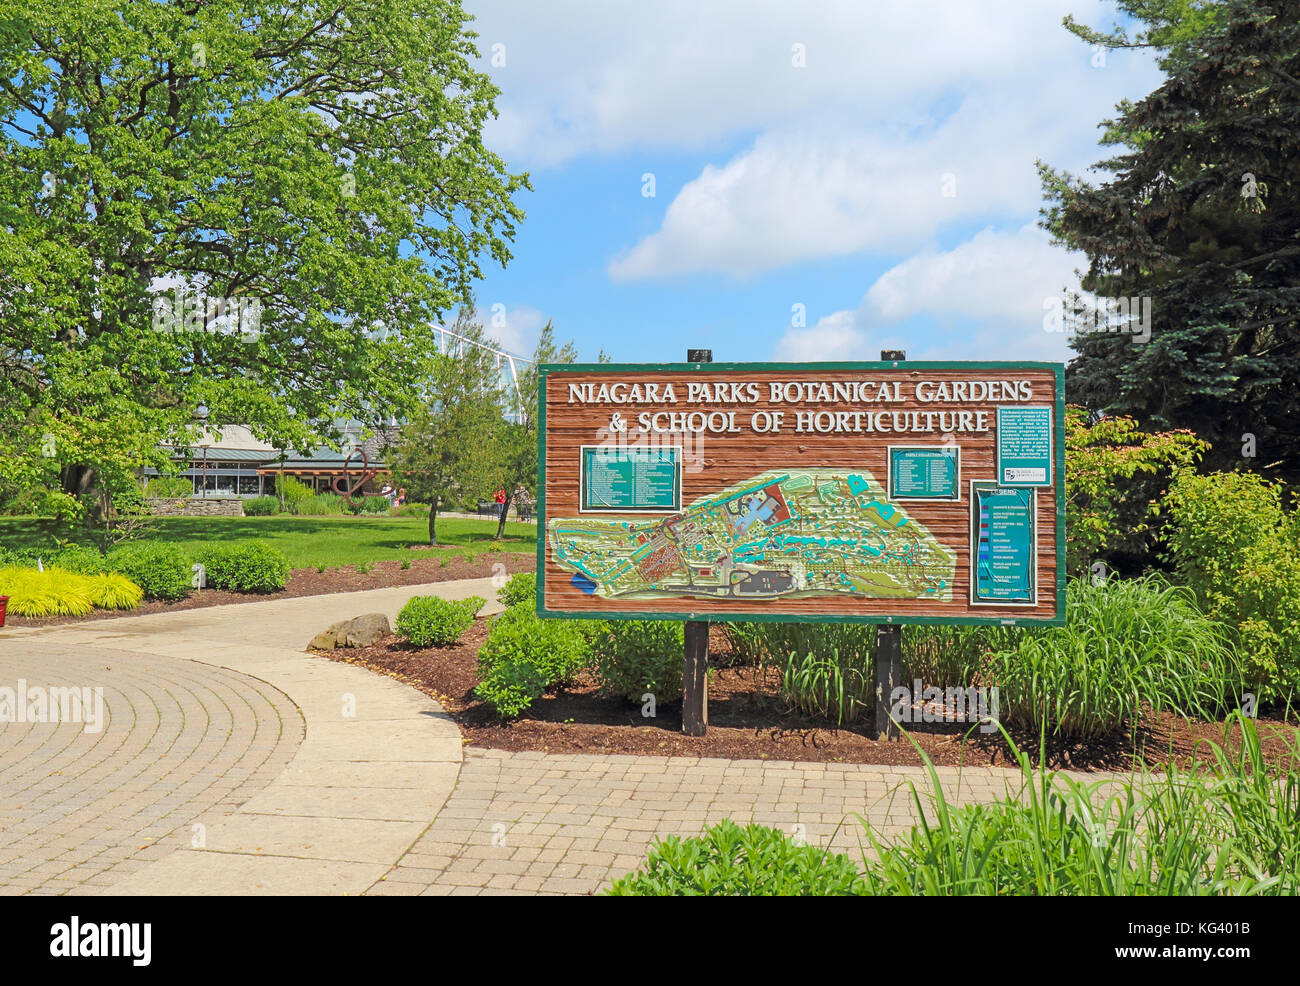 Las cataratas del Niágara, Canadá - 29 de mayo de 2017: Firmar y mapa de los Jardines Botánicos del Niagara Parks & Escuela de horticultura. Este 99-acre park, fundado en 1936. Foto de stock